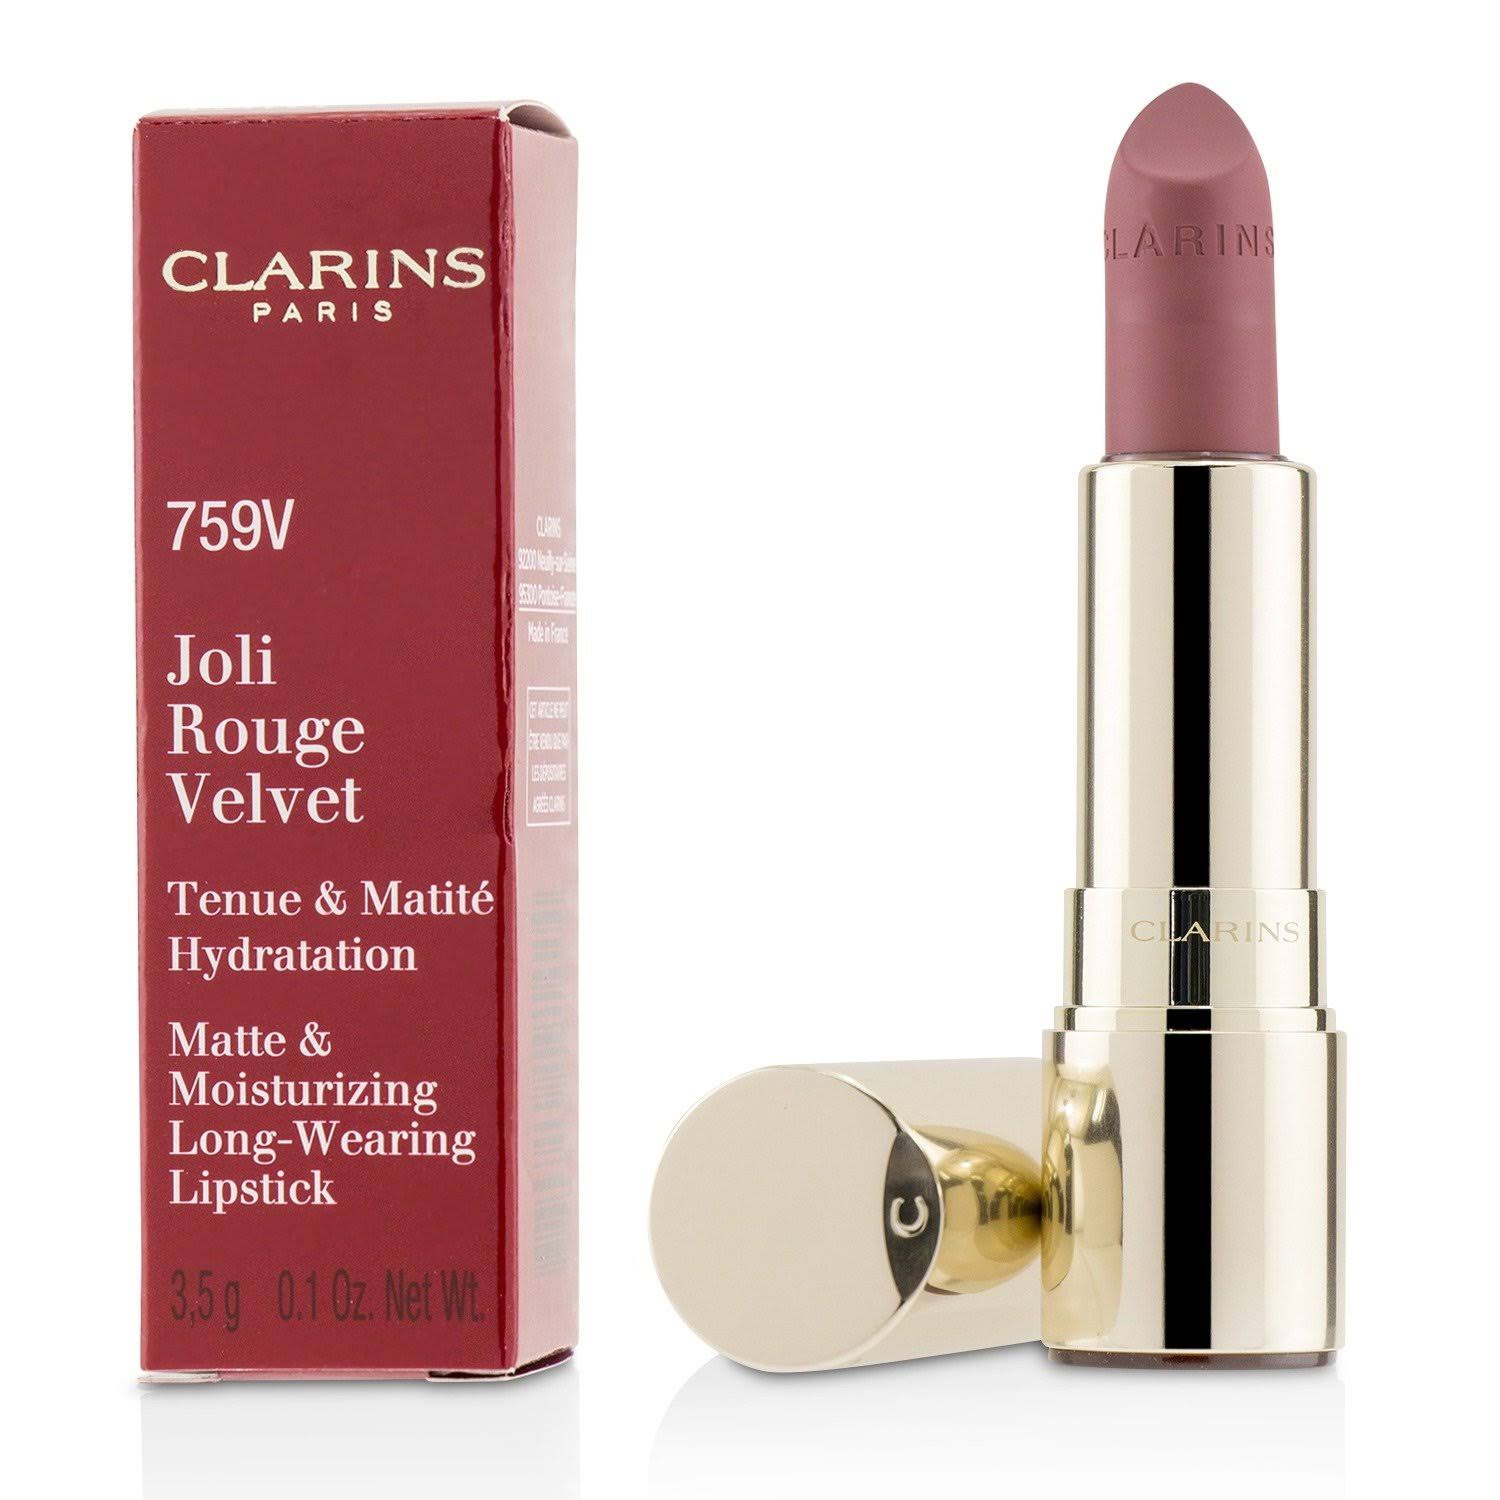 Clarins Joli Rouge Velvet Lipstick - #759v Woodberry, 3.5g